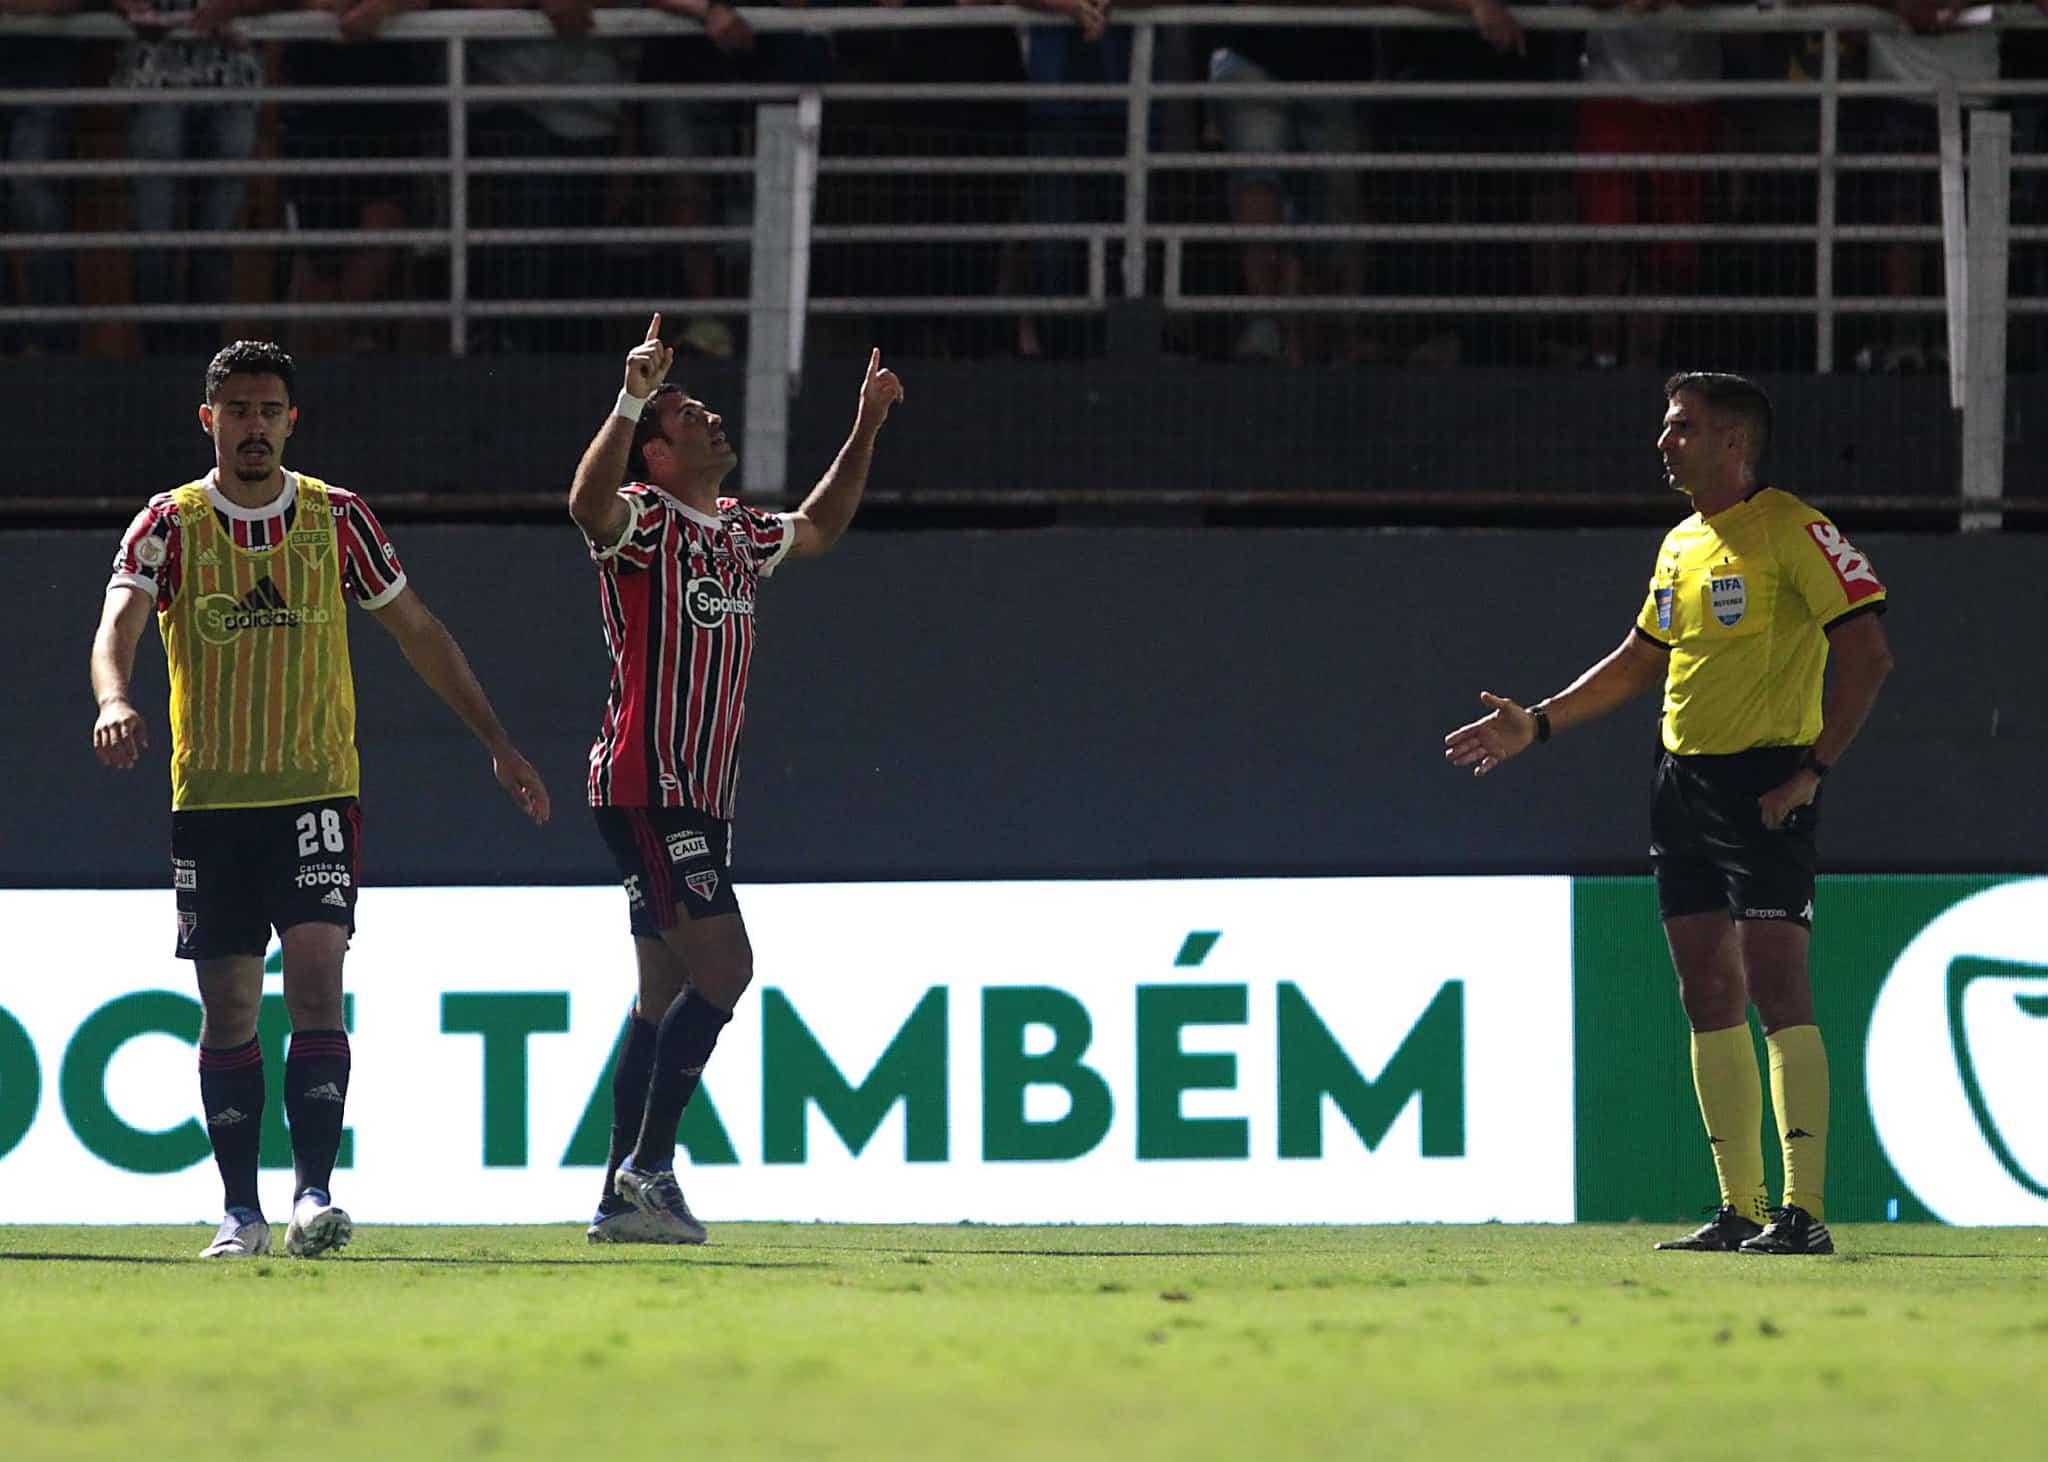 Reveja o gol de Eder e os principais lances de RB Bragantino 1x1 SPFC